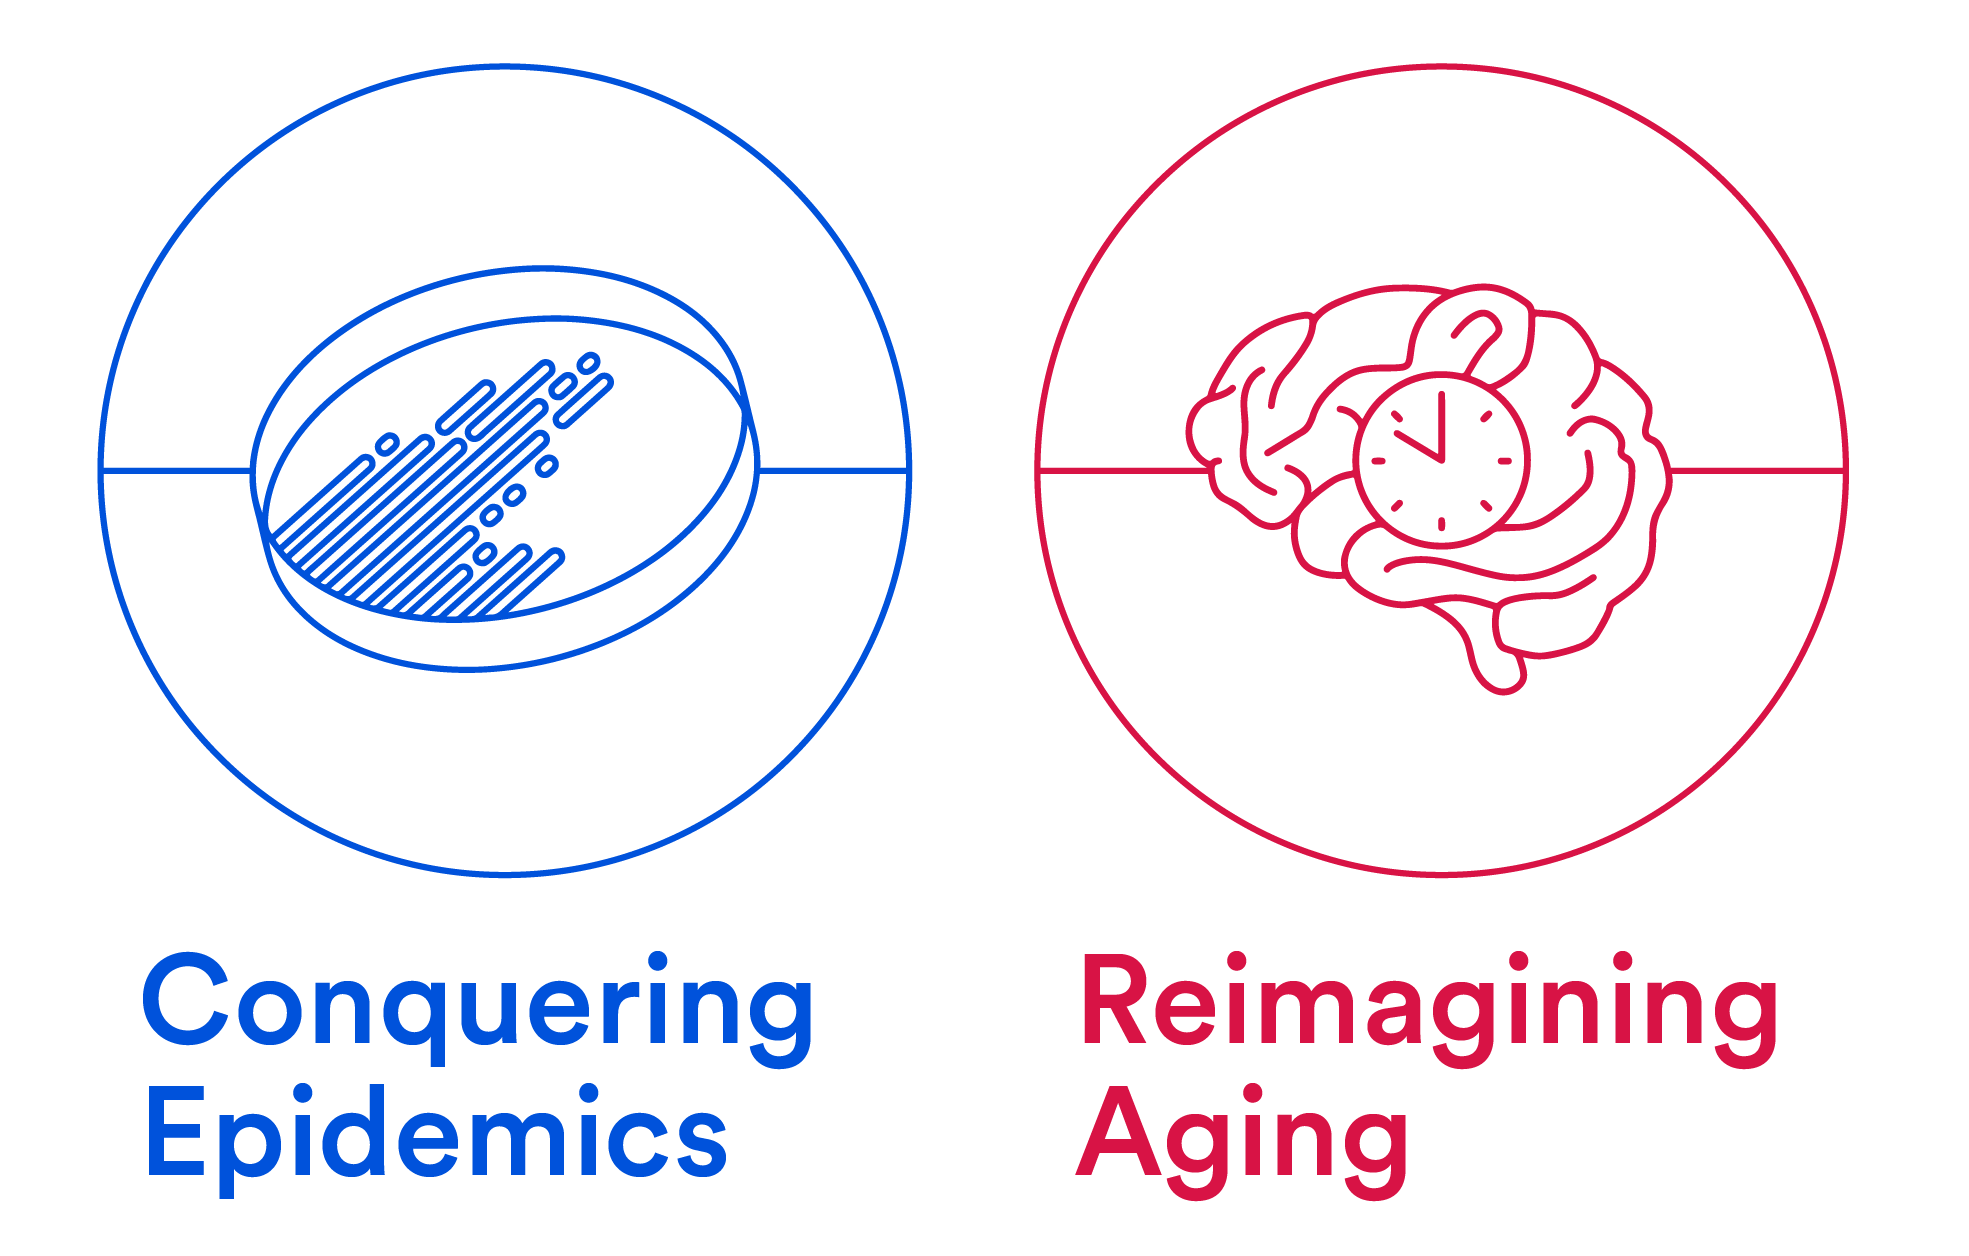 Conquering Epidemics, Reimagining Aging